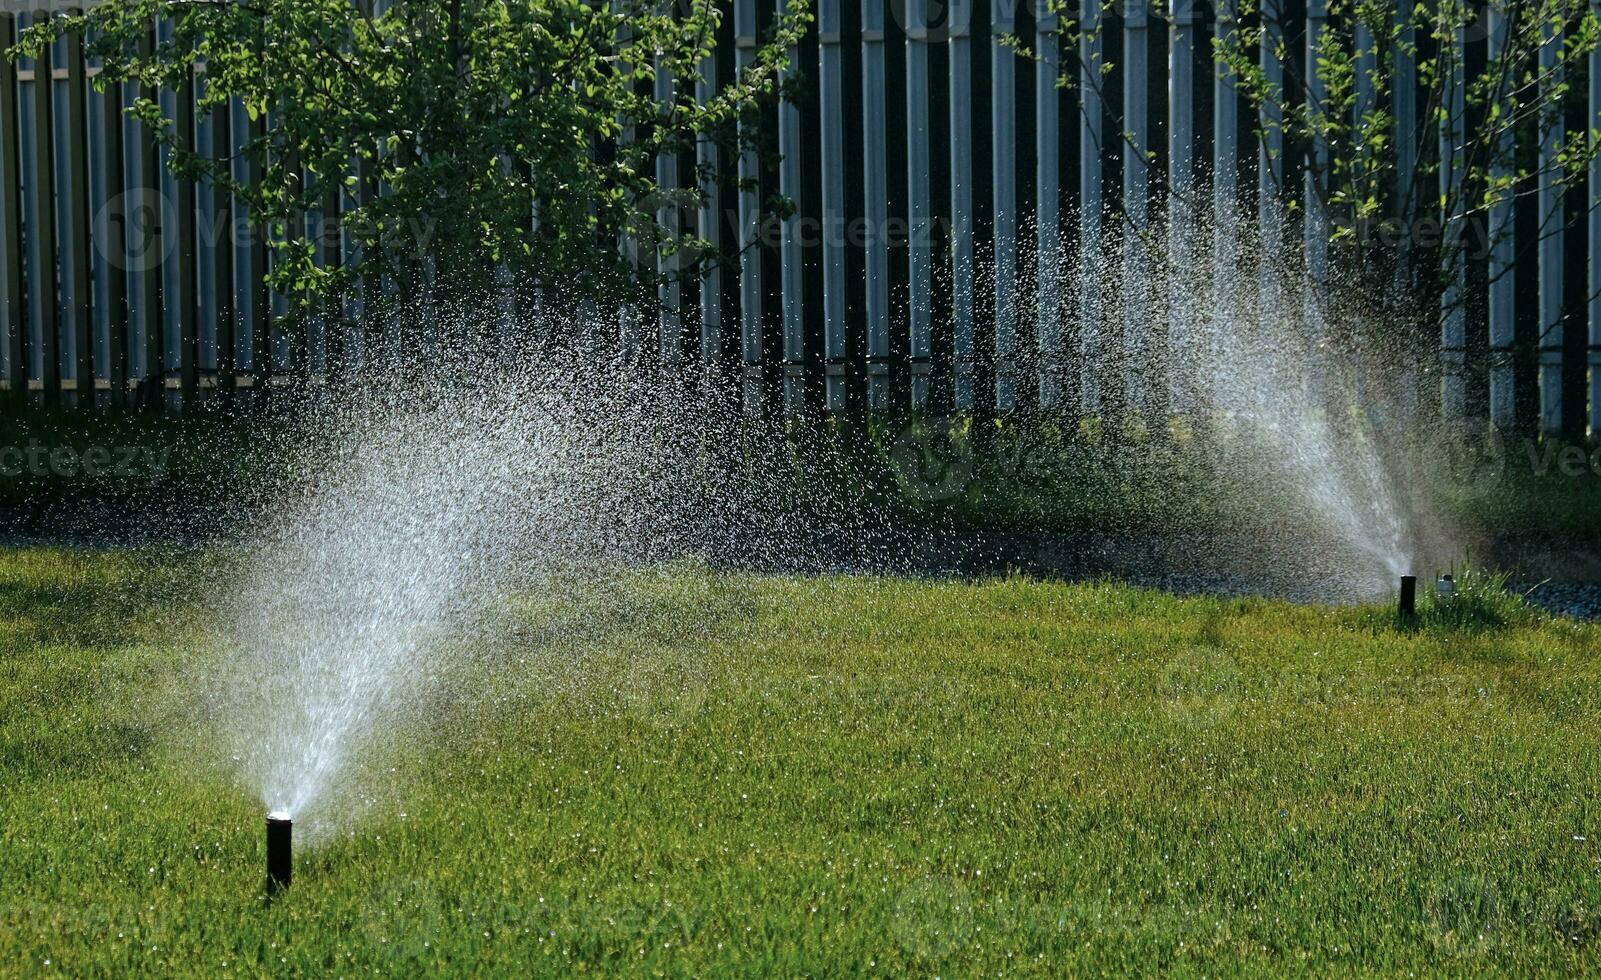 automatisch tuin irrigatie systeem gieter gazon met verstelbaar hoofd. automatisch uitrusting voor irrigatie en onderhoud van gazons, tuinieren. foto